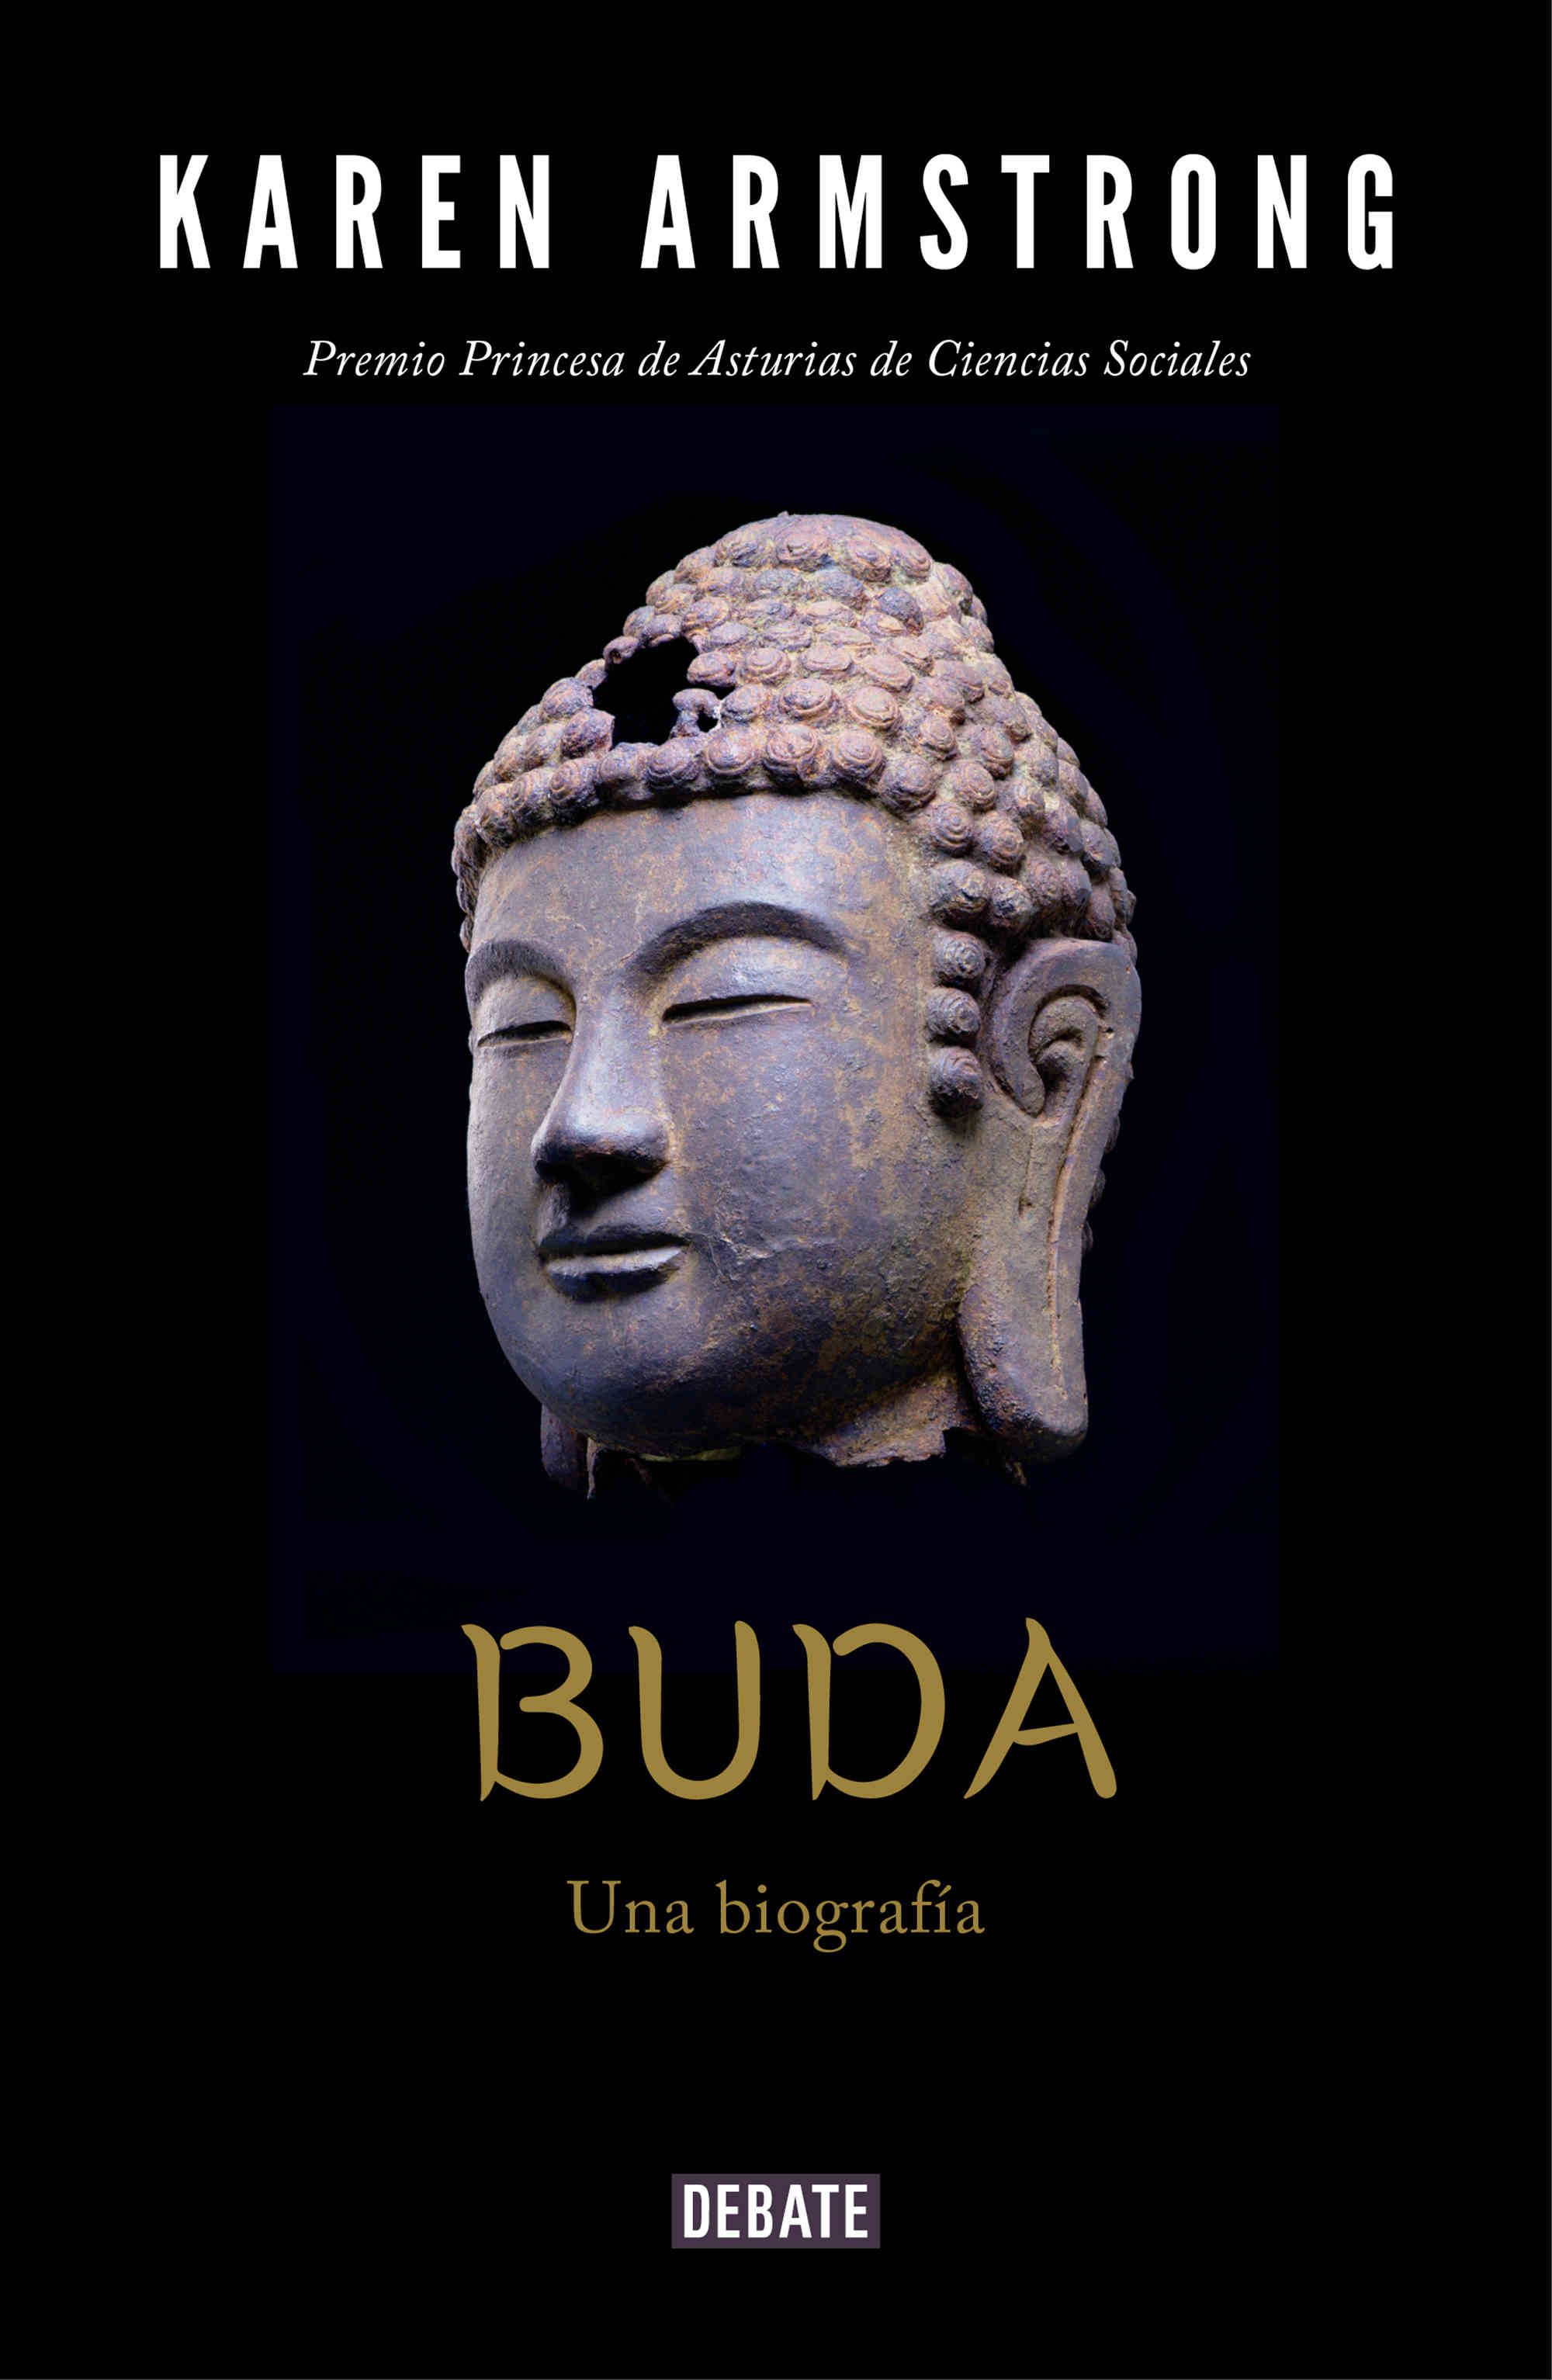 Imagen Buda. Una biografía. Karen Armstrong